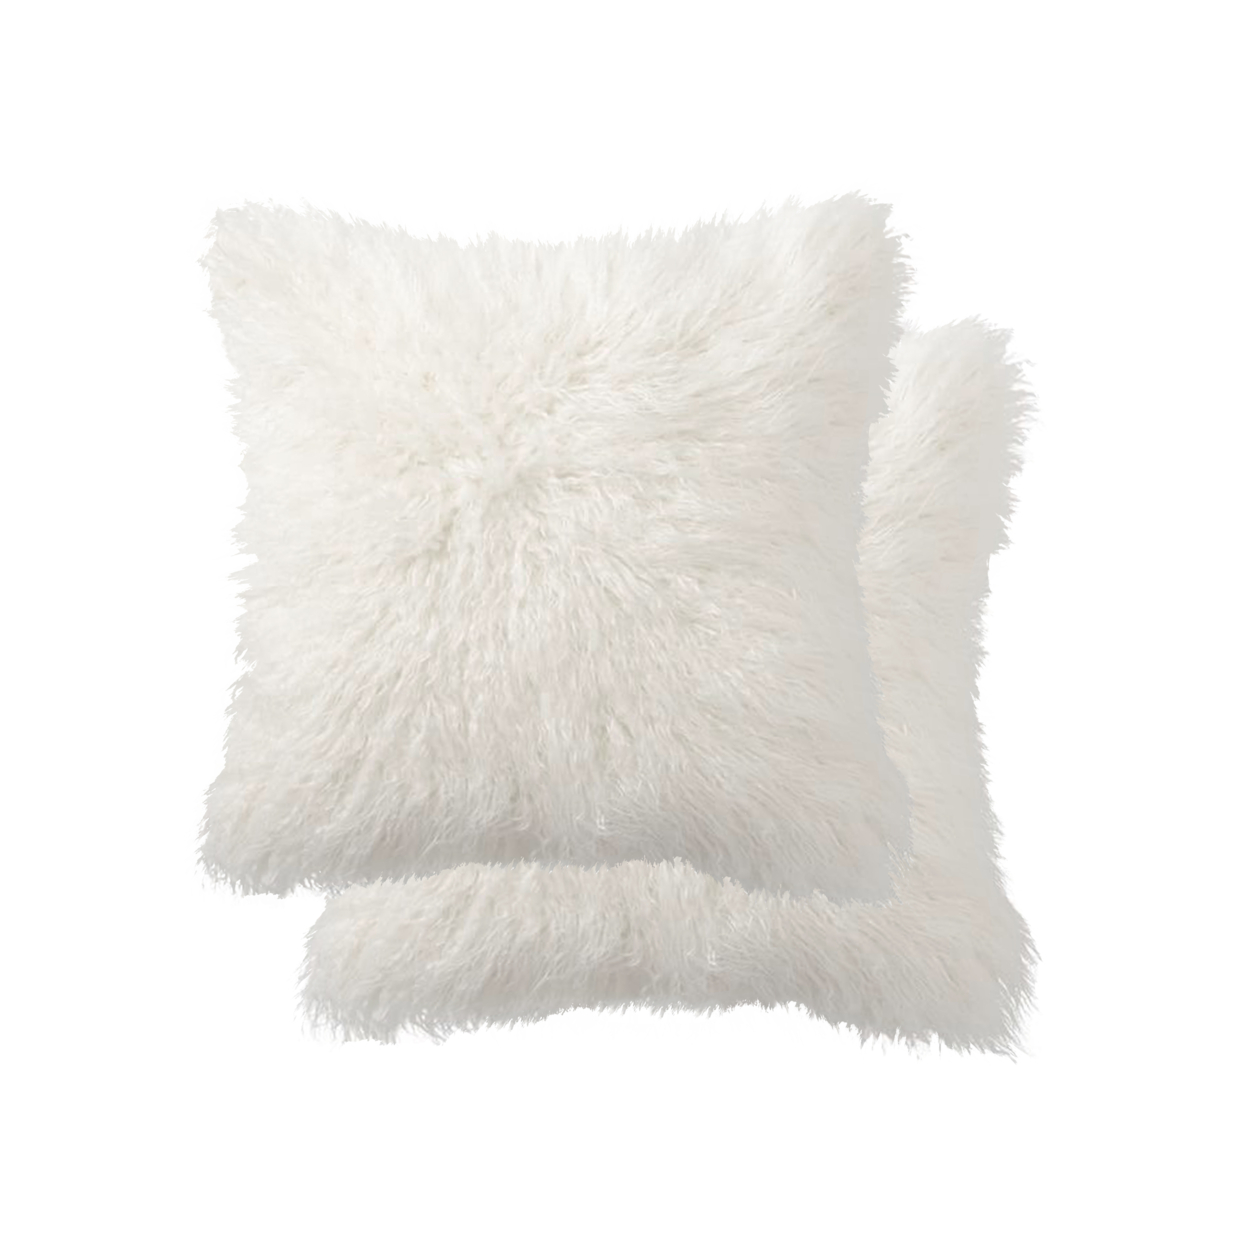 2 Pack Belton Faux Sheepskin Fur Pillow 18"x18" Off White